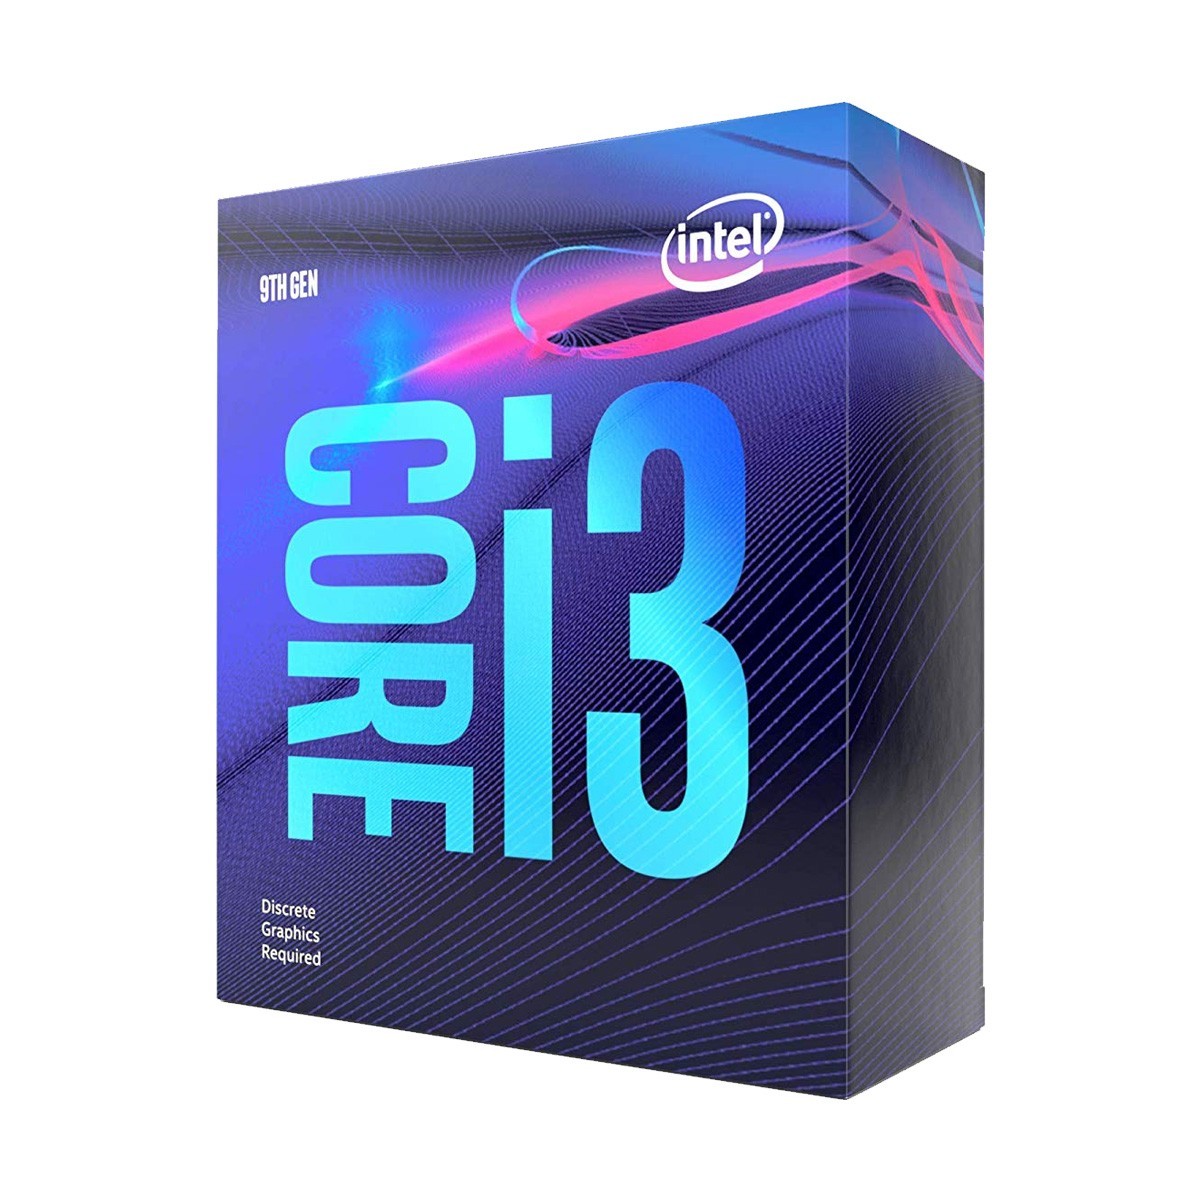 Immagine pubblicata in relazione al seguente contenuto: Intel Core i3-10300 & Core i3-10100 vs AMD Ryzen 3 3300X & Ryzen 3 3100 | Nome immagine: news30687_Core-i3_1.jpg